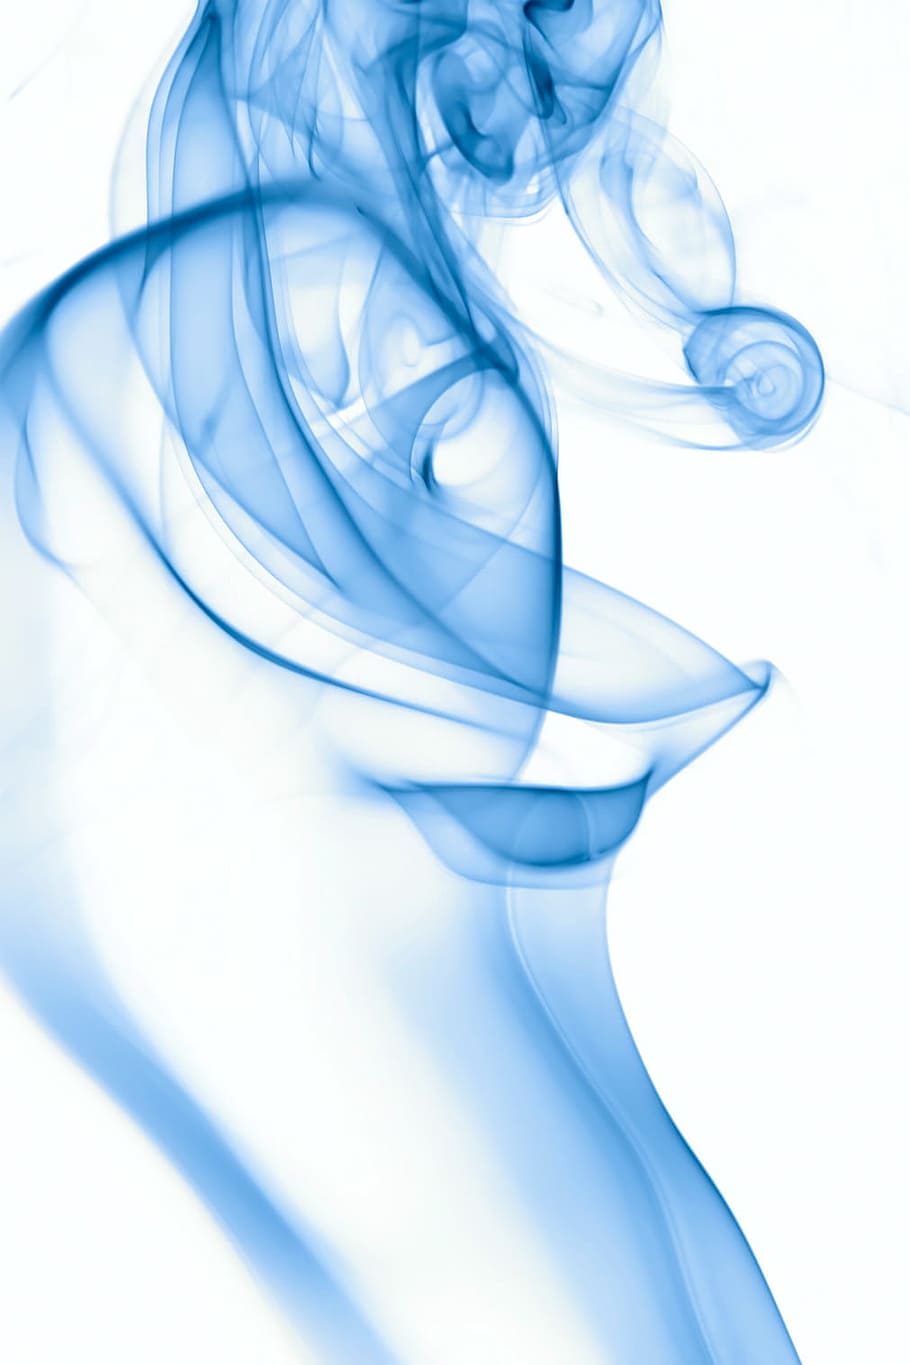 Blue Smoke Graphics, mist, smoke, dynamic, white Free HD Wallpaper